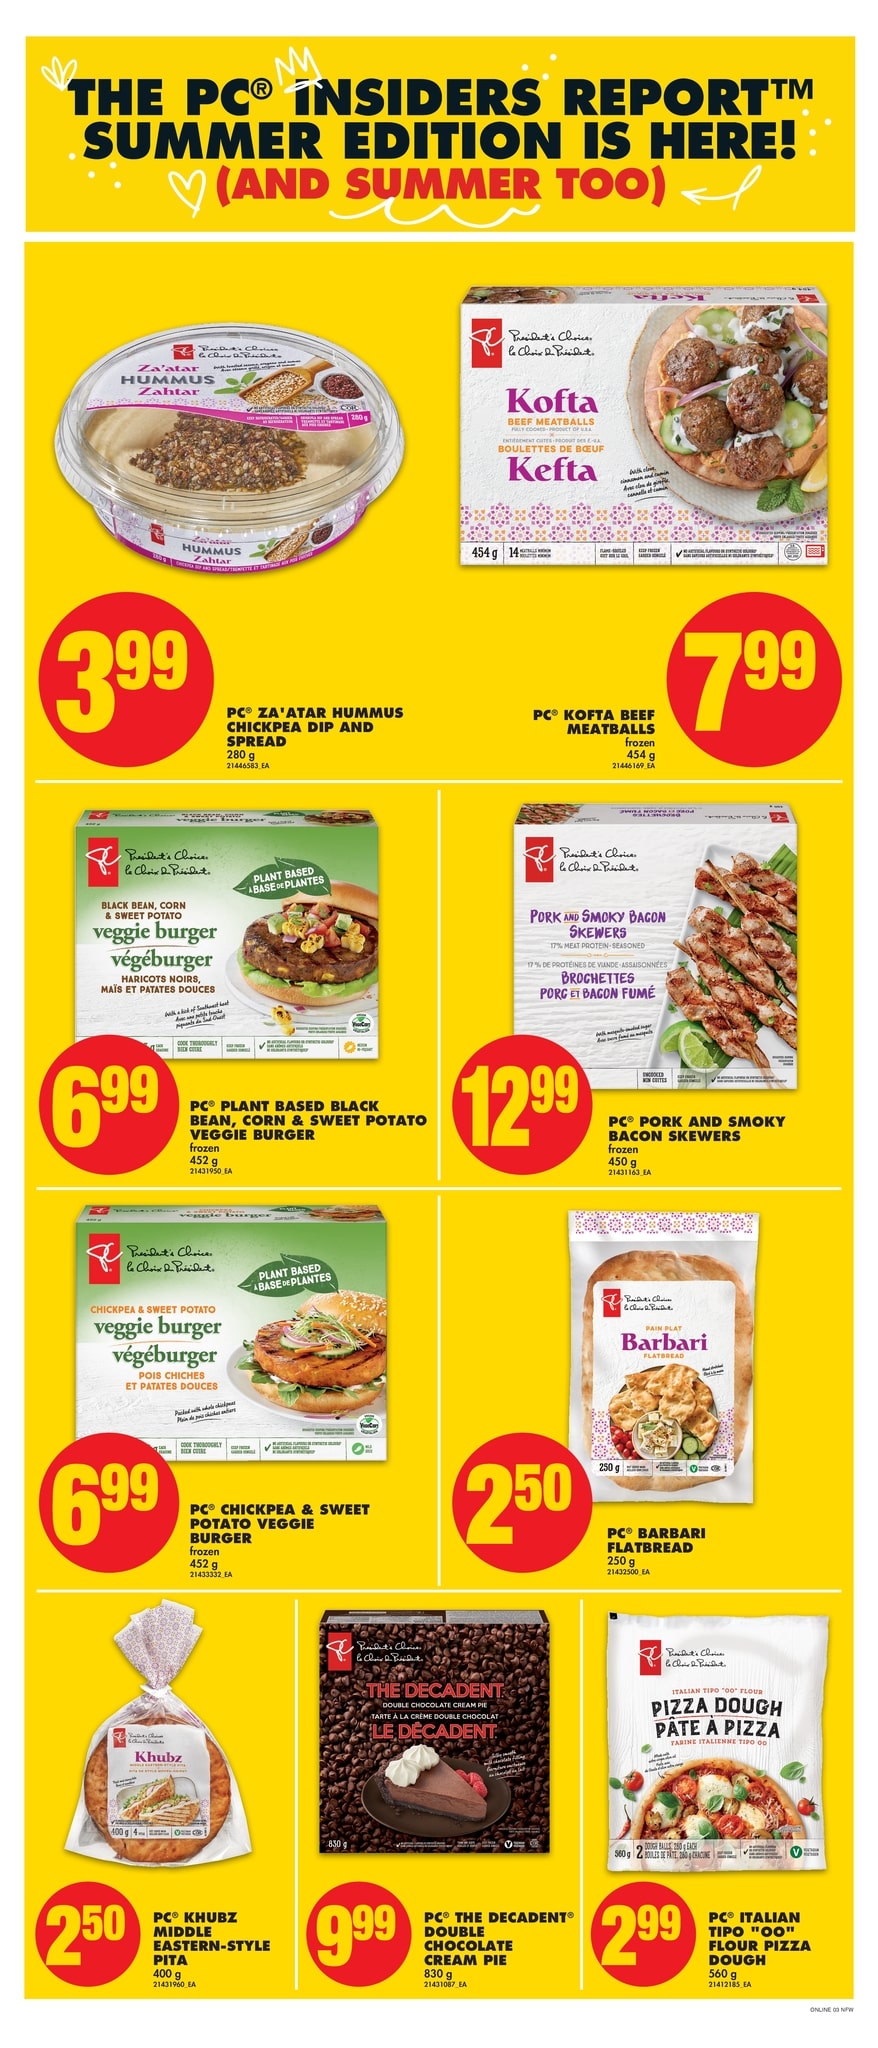 No Frills (Western Canada, Northern Ontario) - Weekly Flyer Specials - Page 9